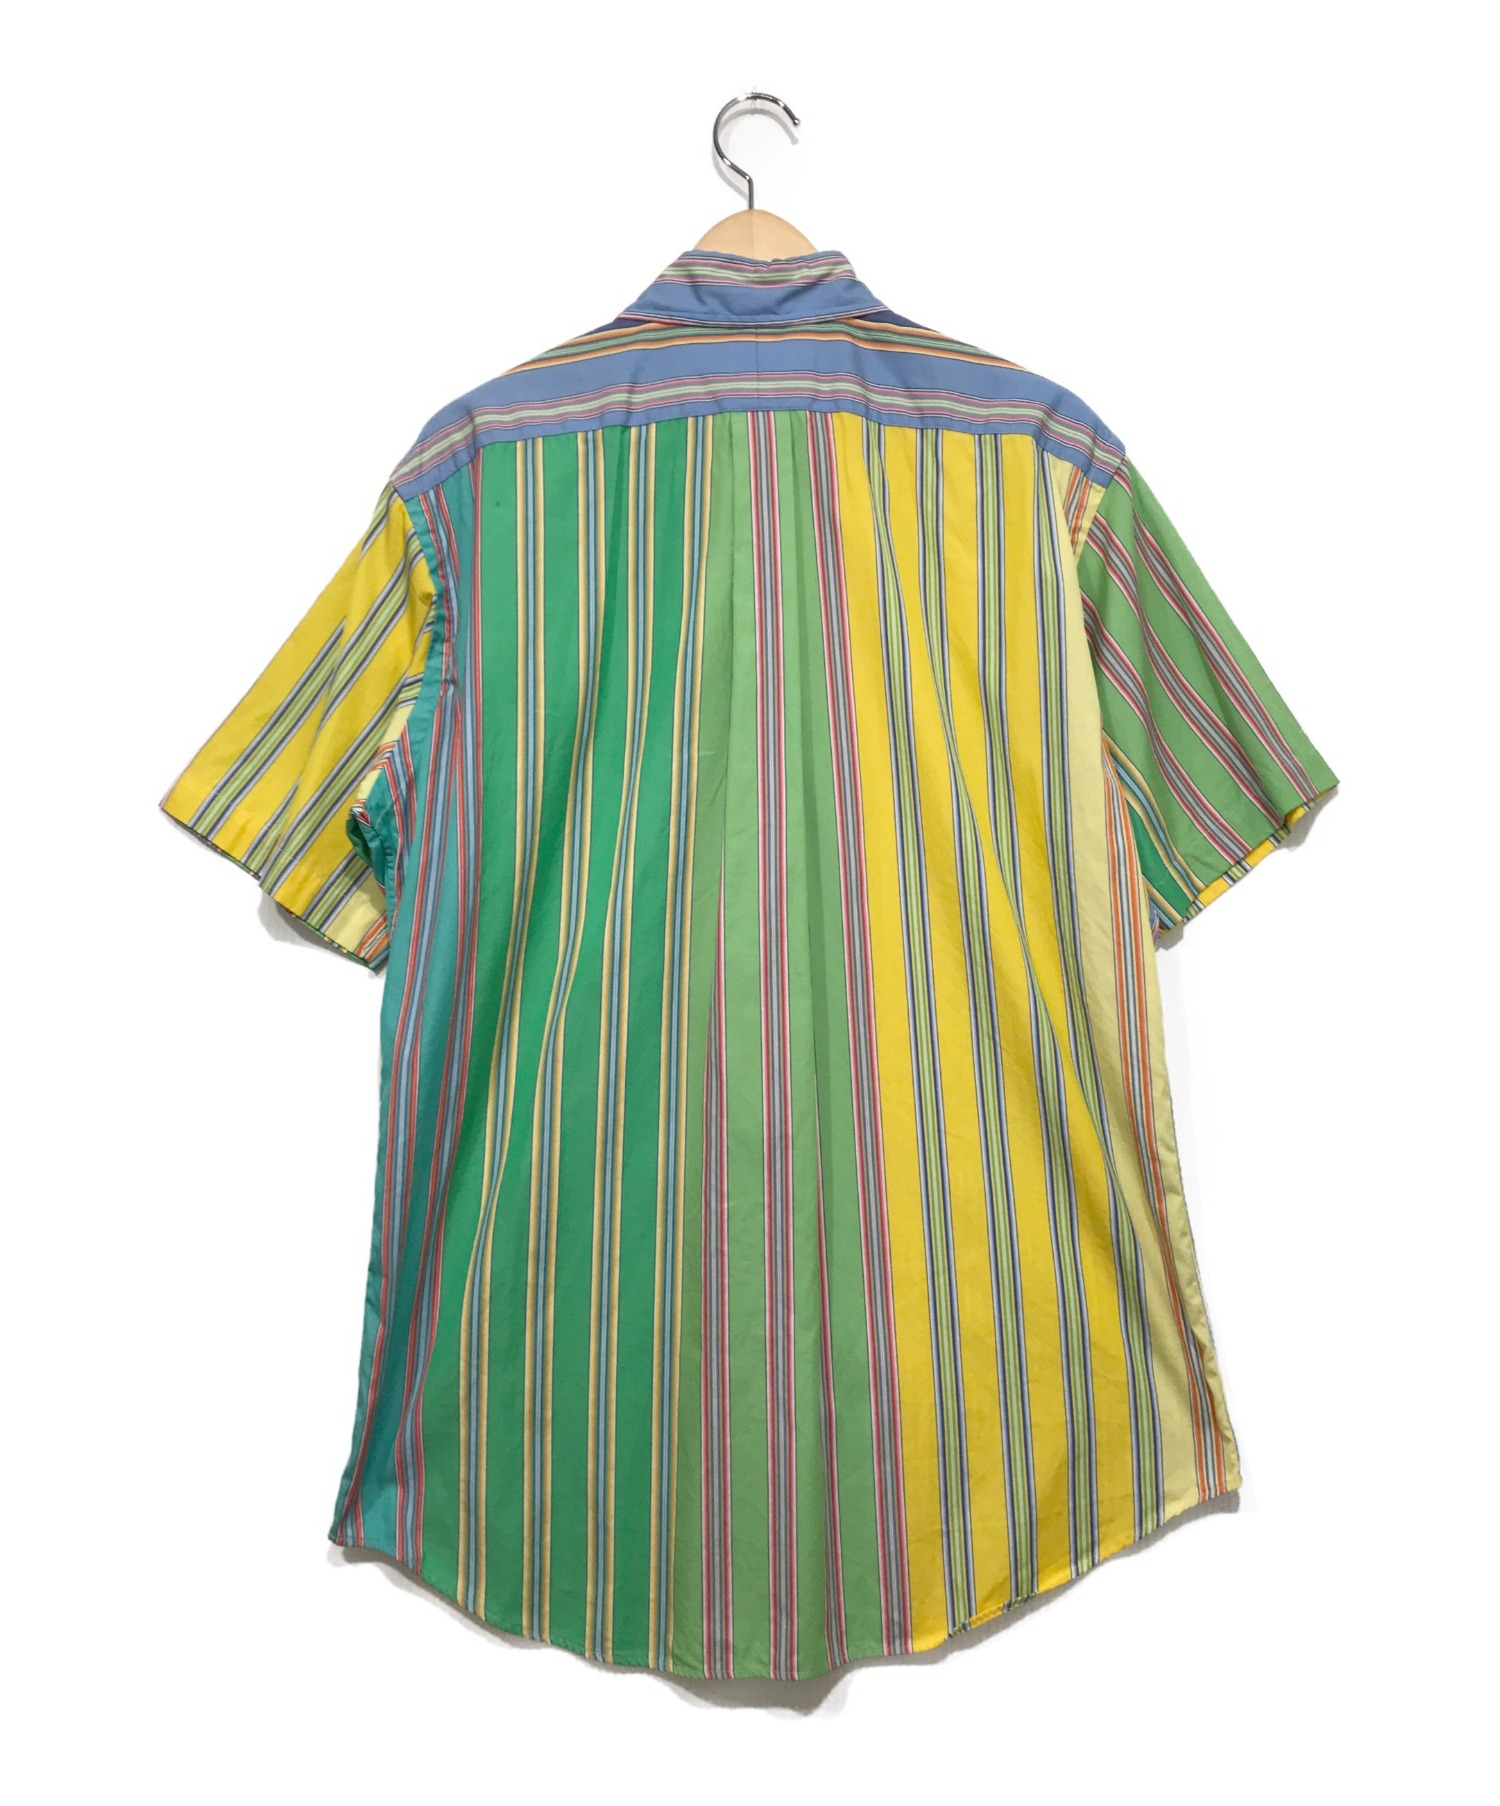 RALPH LAUREN (ラルフローレン) クレイジーパターン半袖シャツ マルチカラー サイズ:L ストライプ